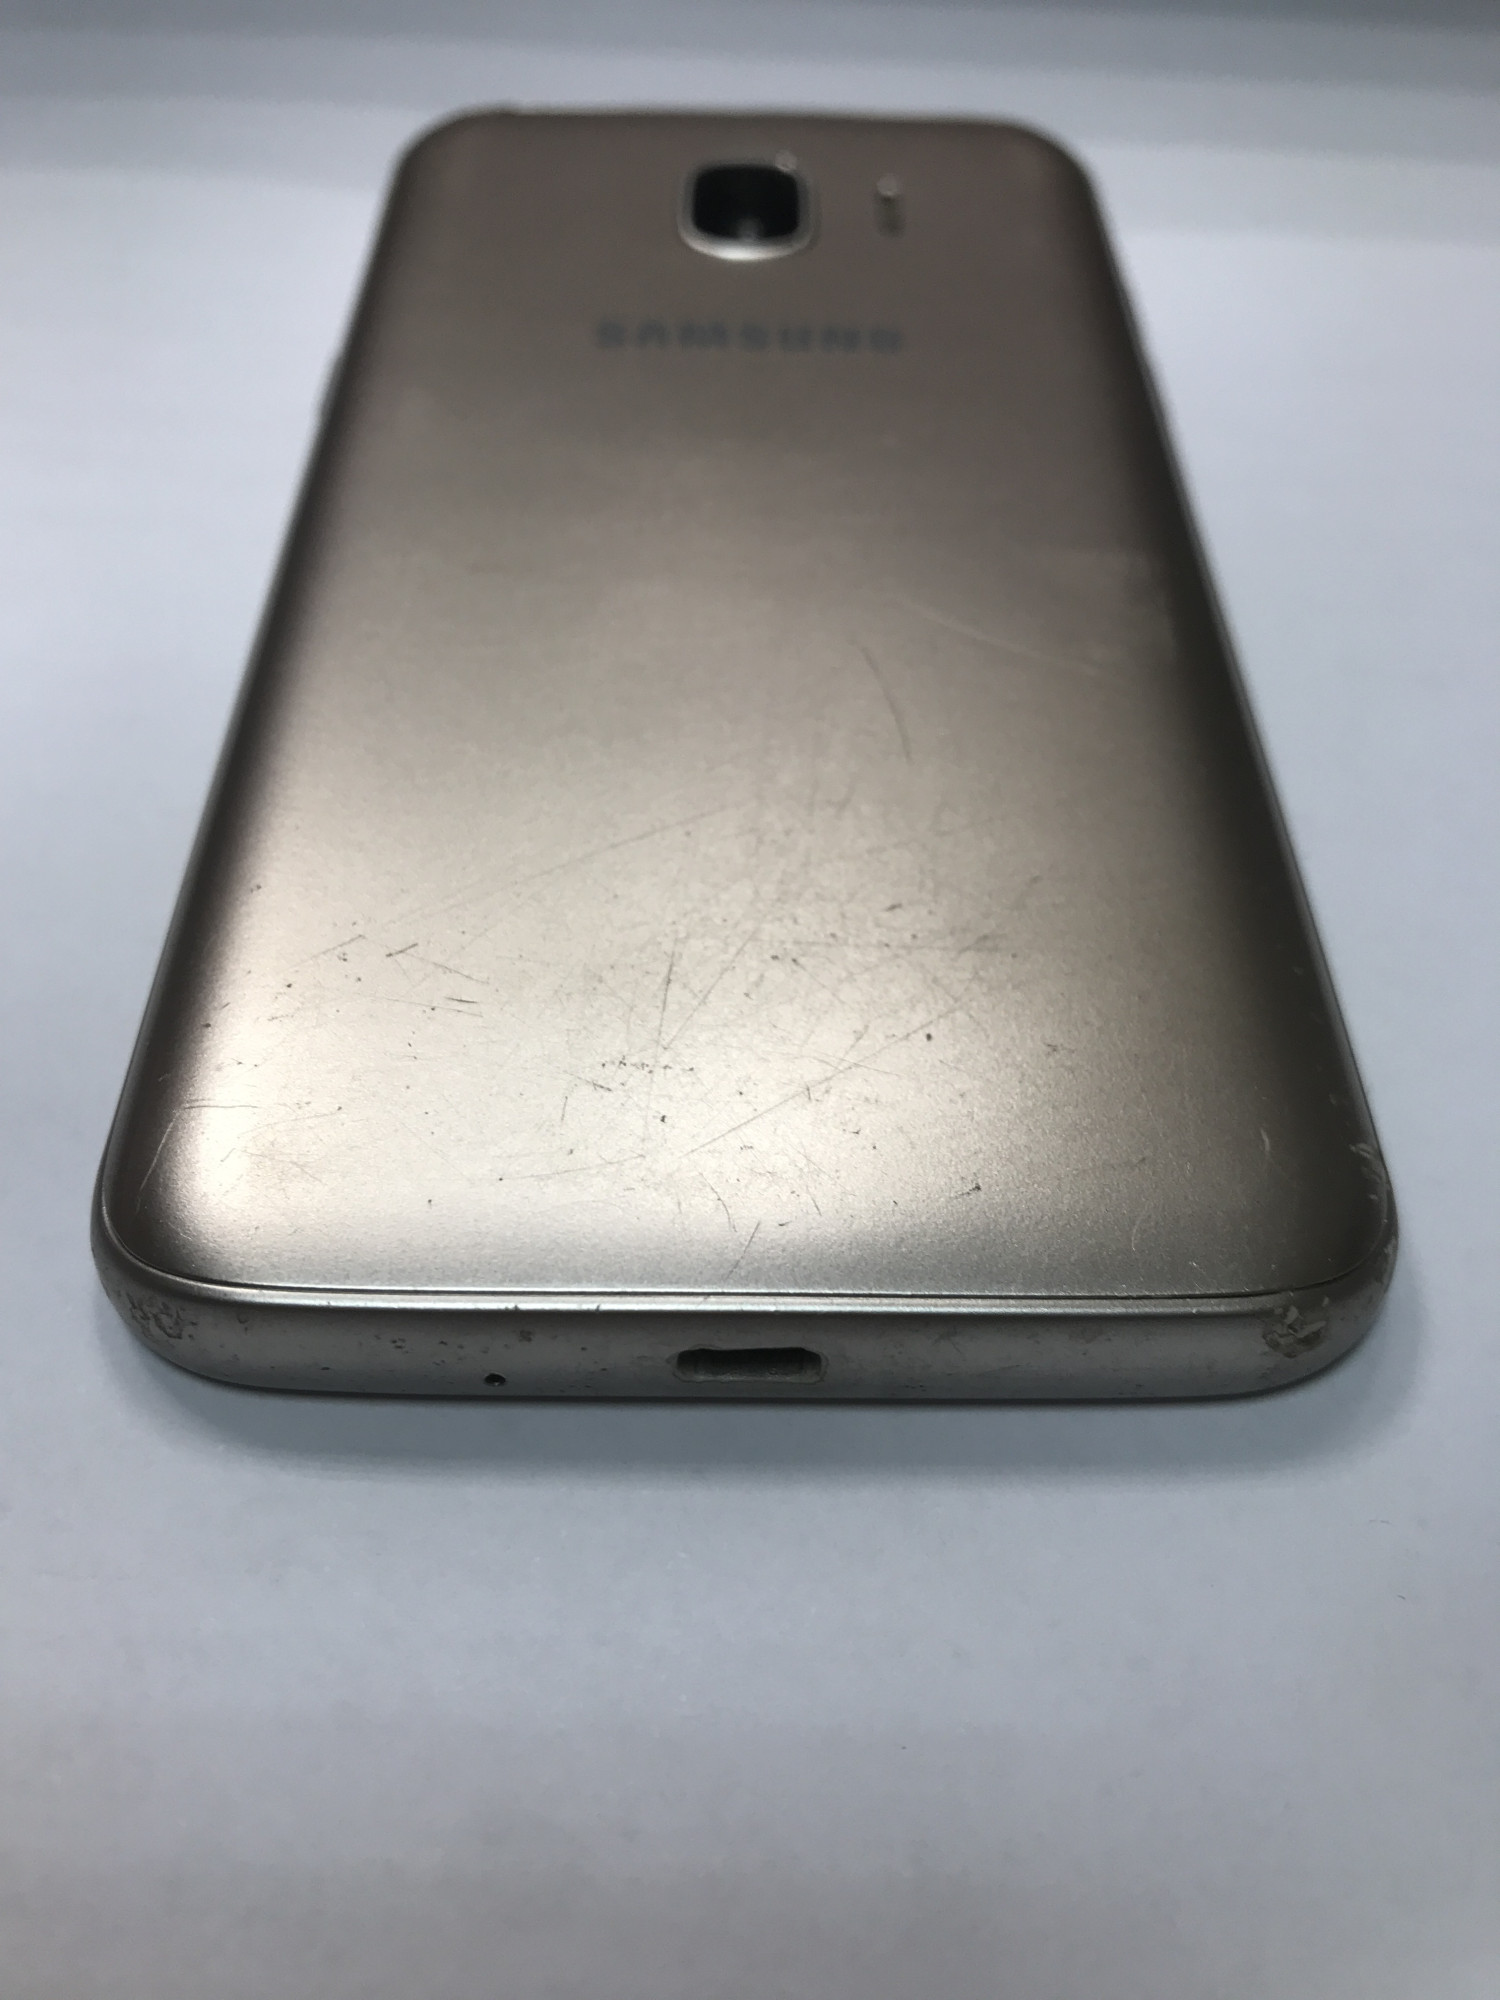 Samsung Galaxy J2 2018 (SM-J250F) 1/16Gb  3